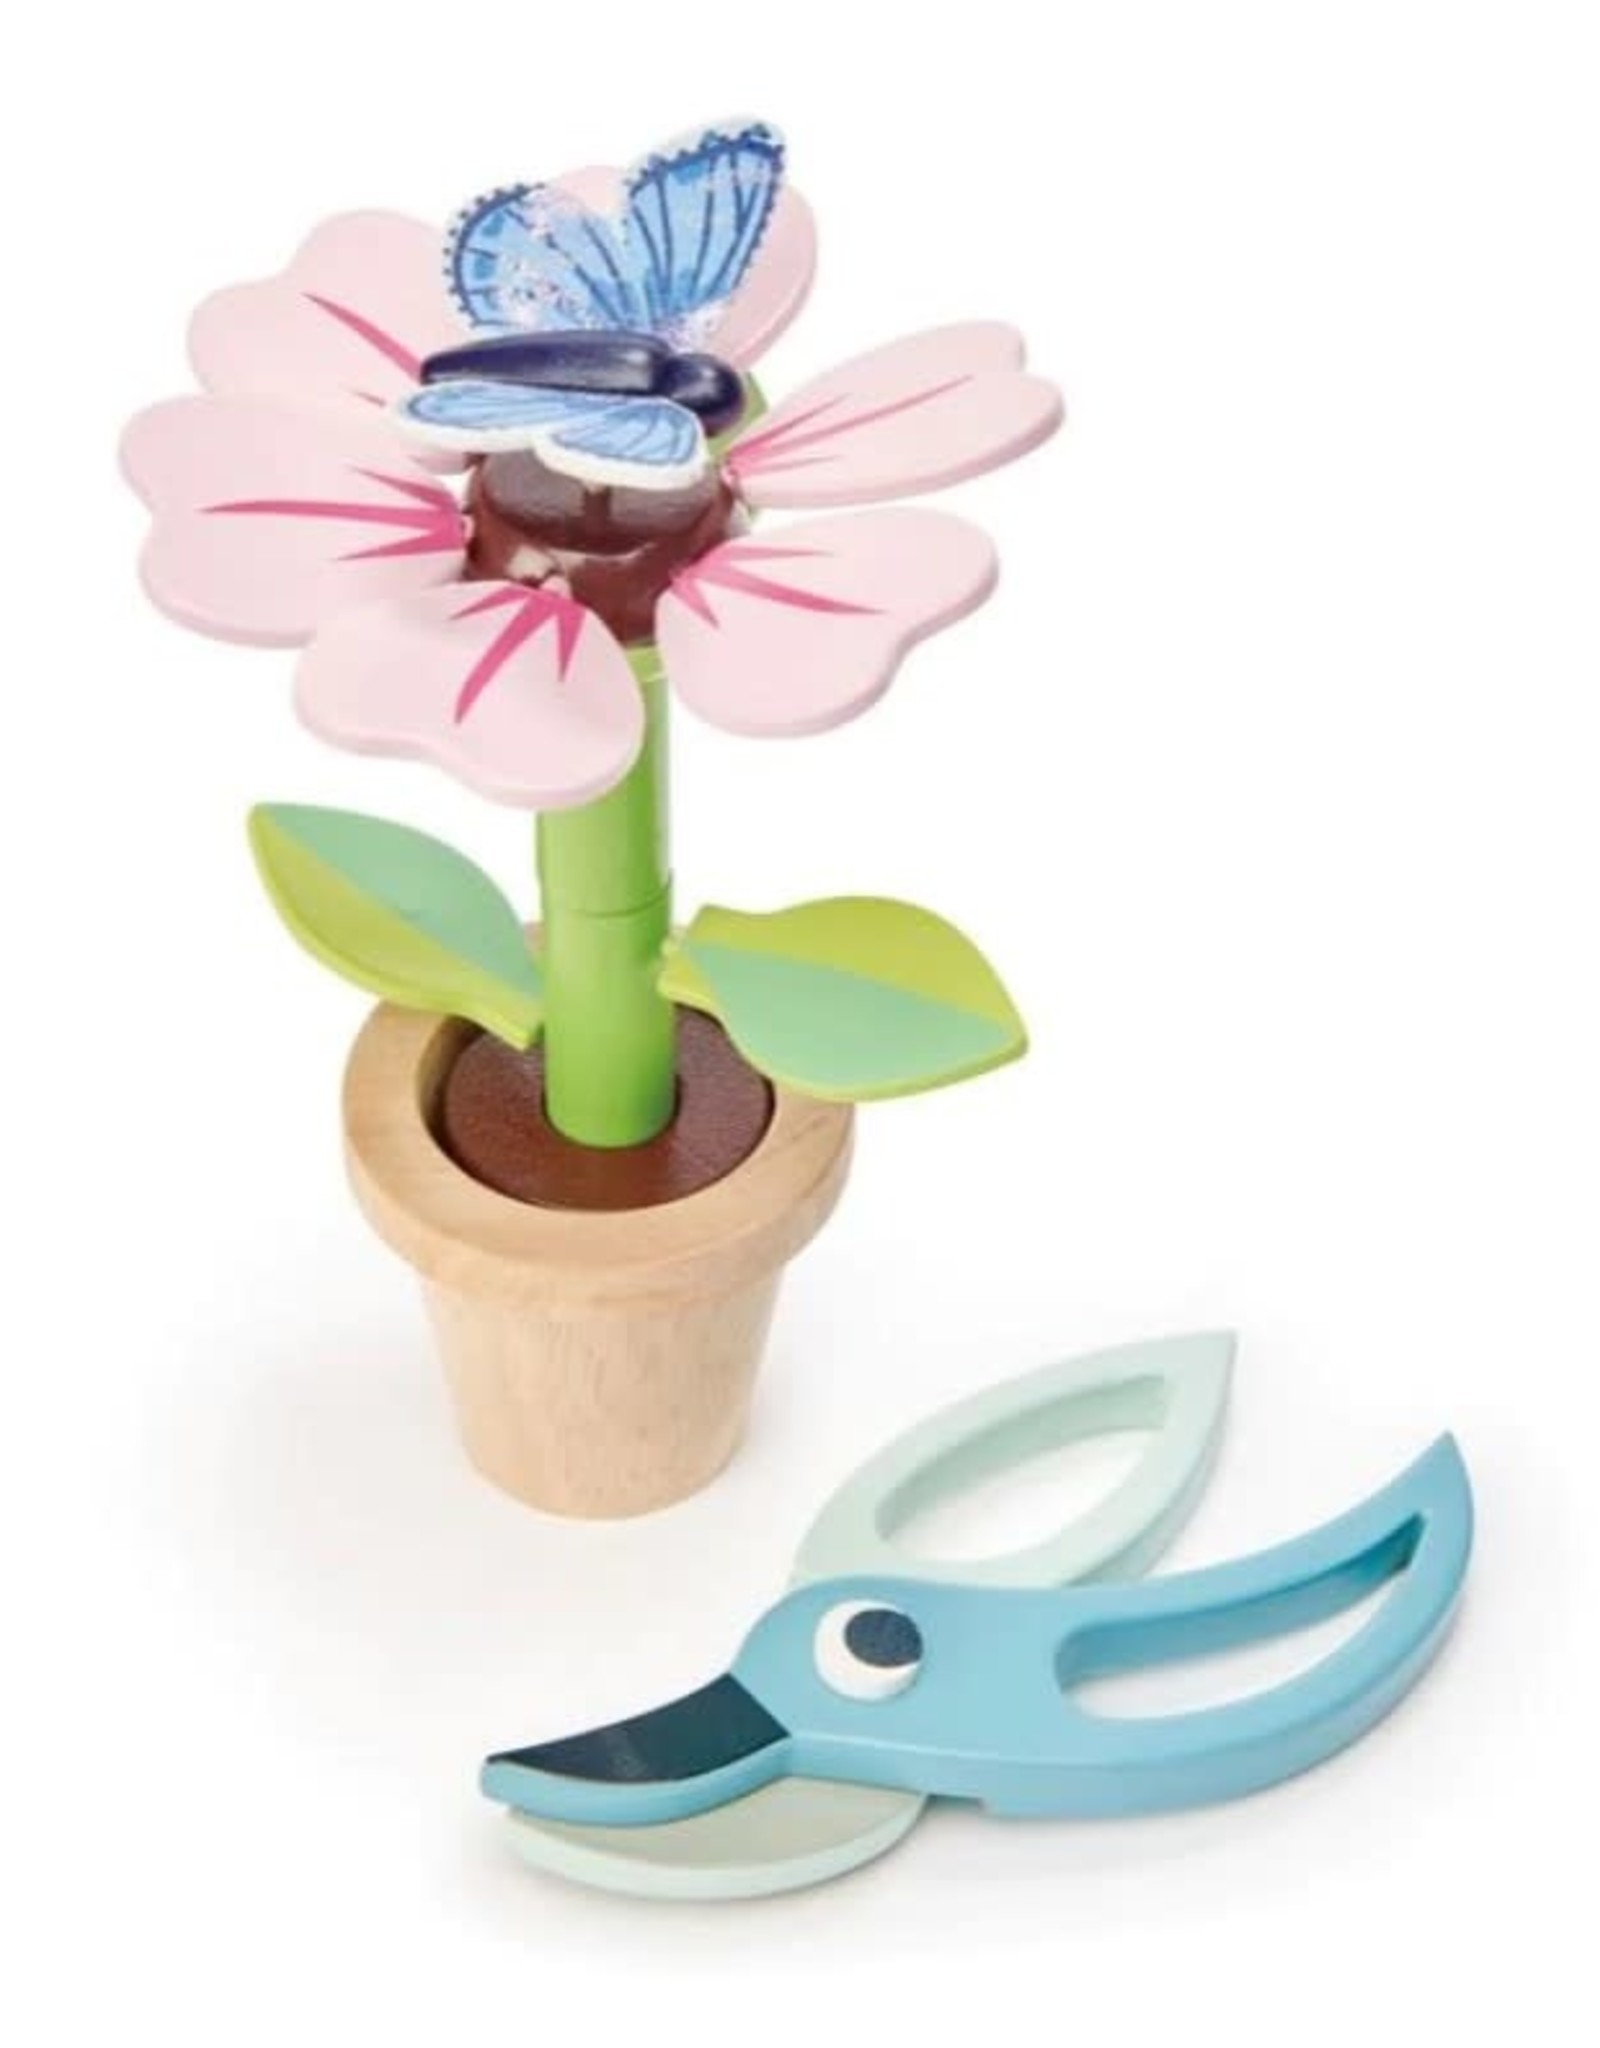 Tender Leaf Toys Blossom Flowerpot